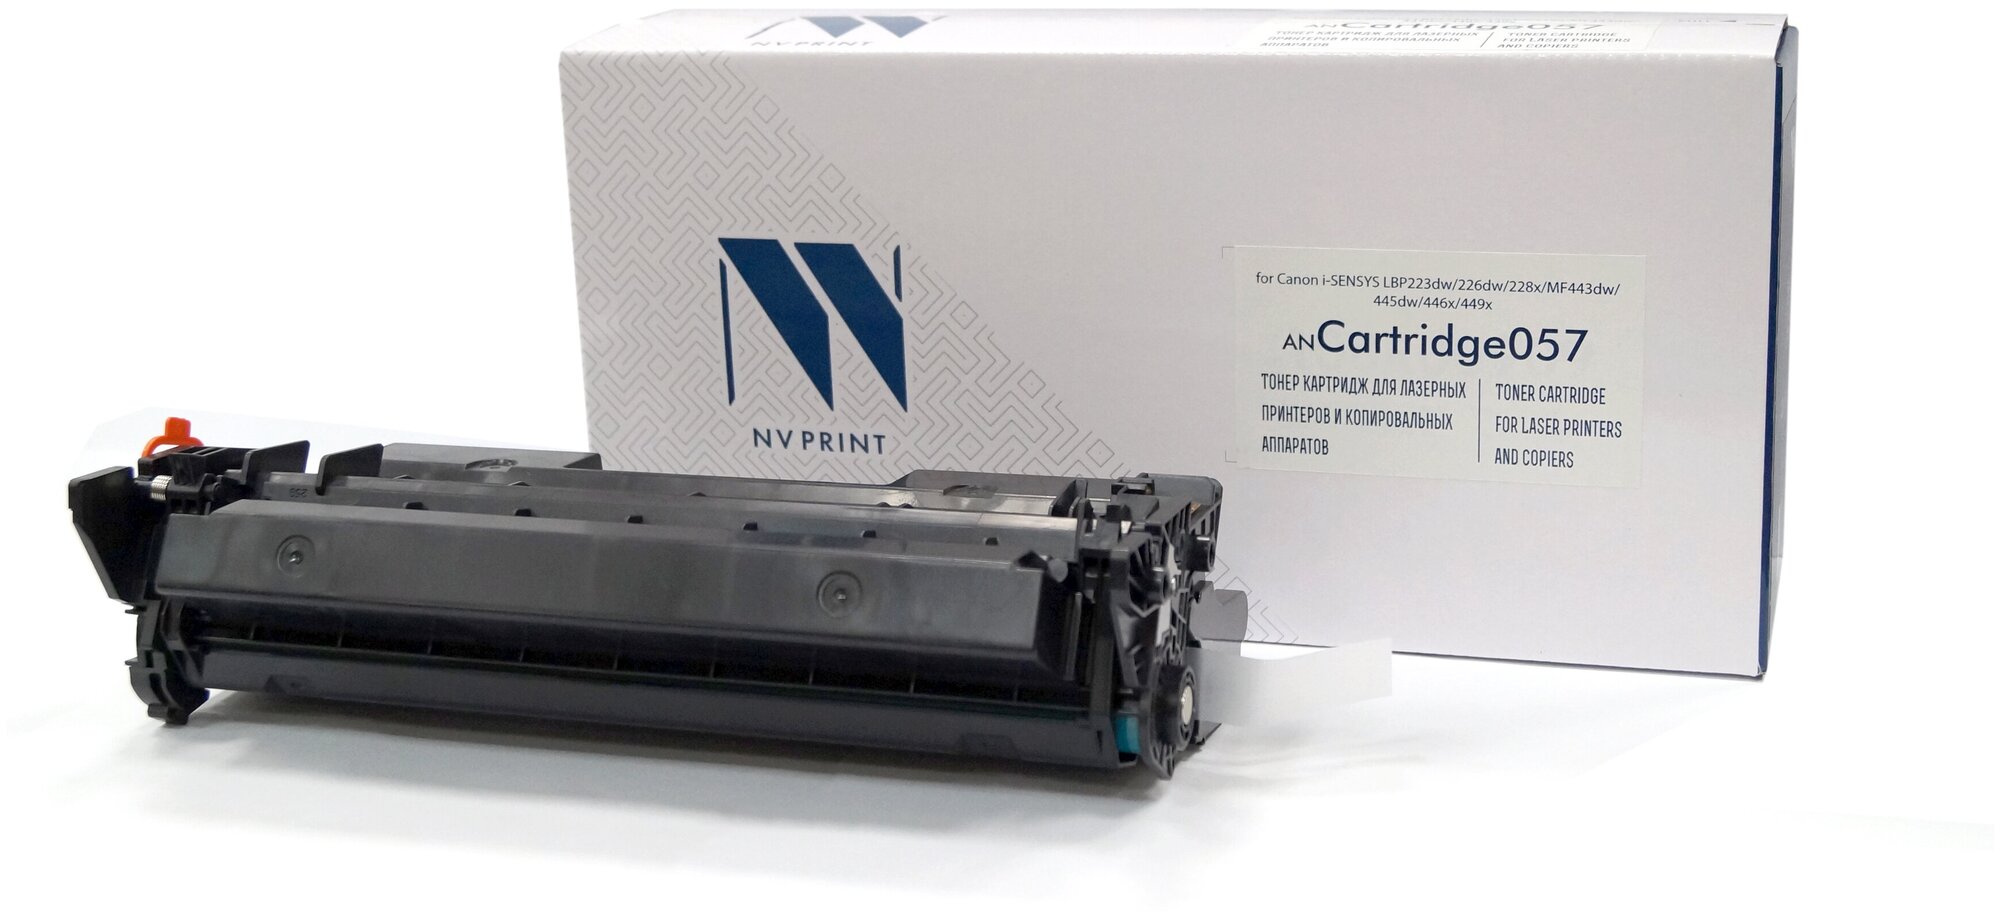 Лазерный картридж NV Print NV-057 для Canon LBP223, Canon LBP226, Canon LBP228, Canon MF443 (совместимый, чёрный, 3100 стр.)